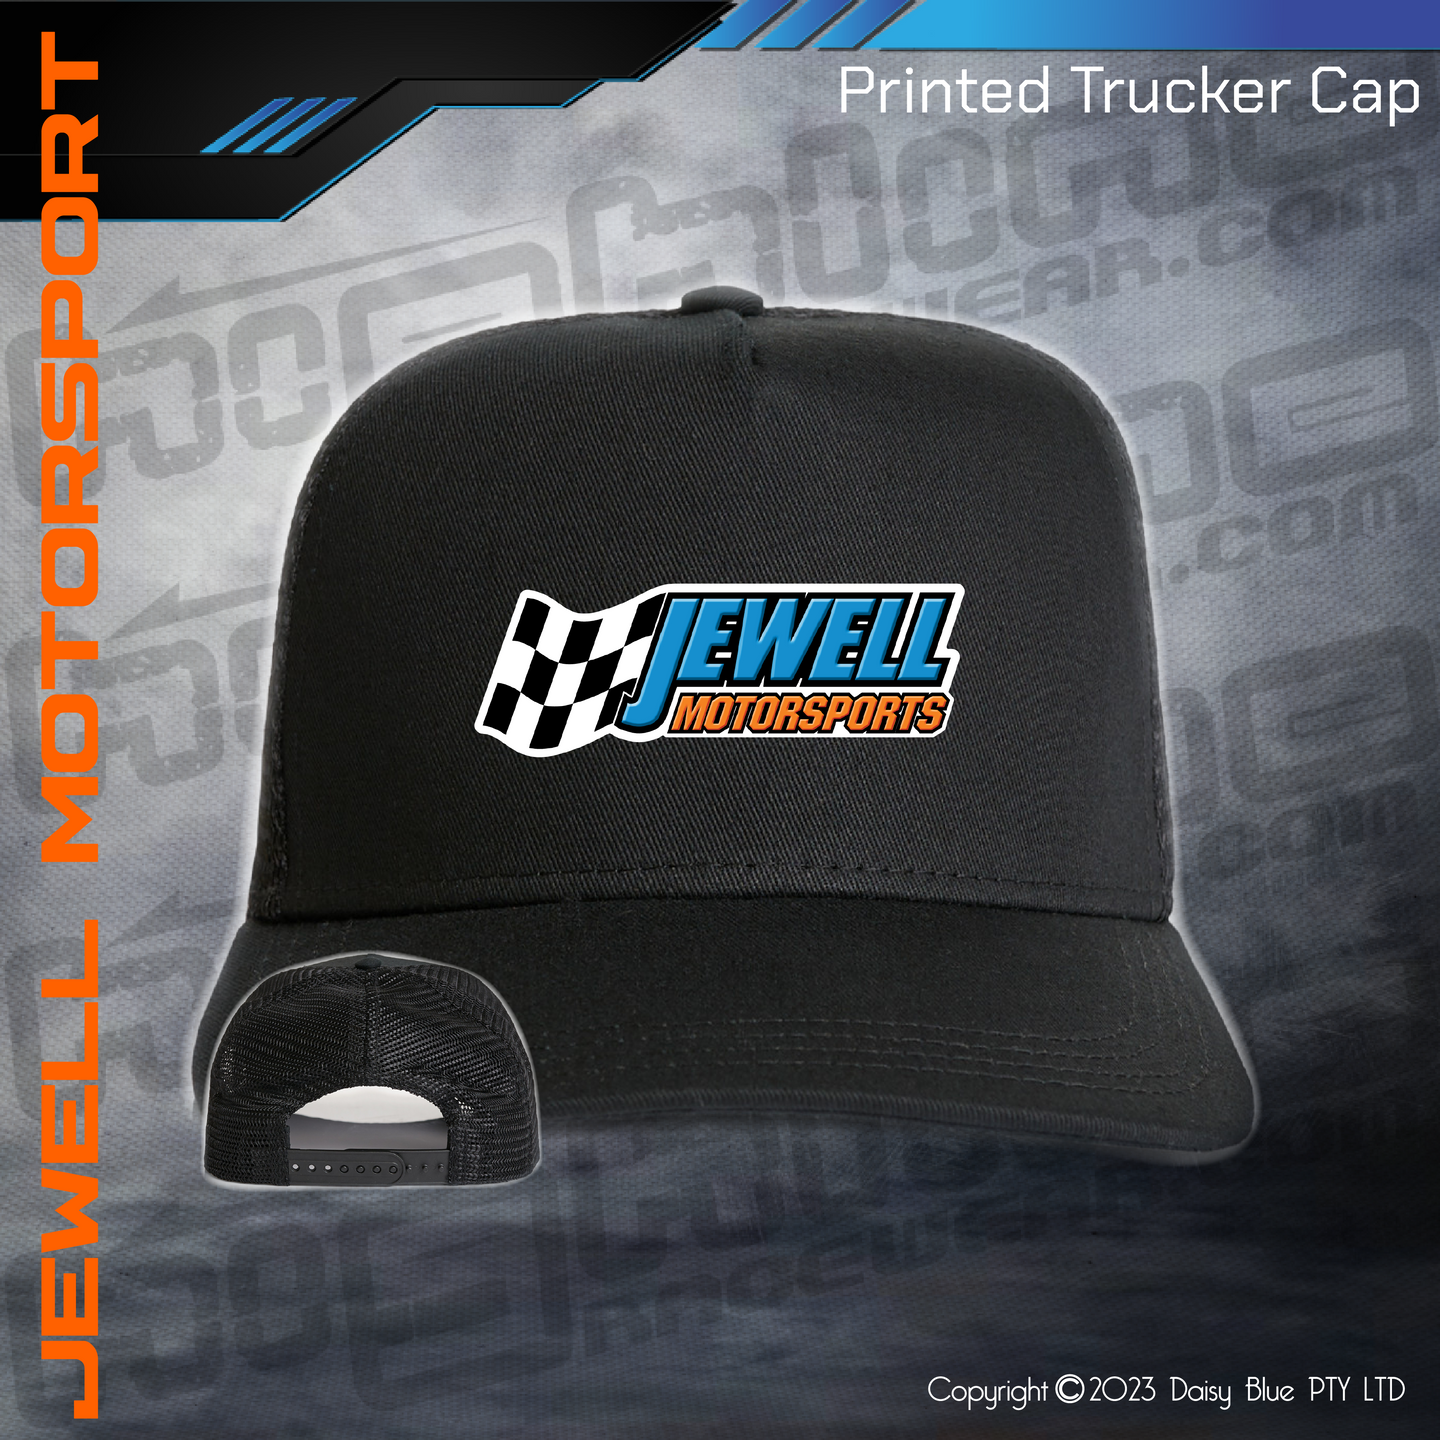 Printed Trucker Cap - Jewell Motorsport